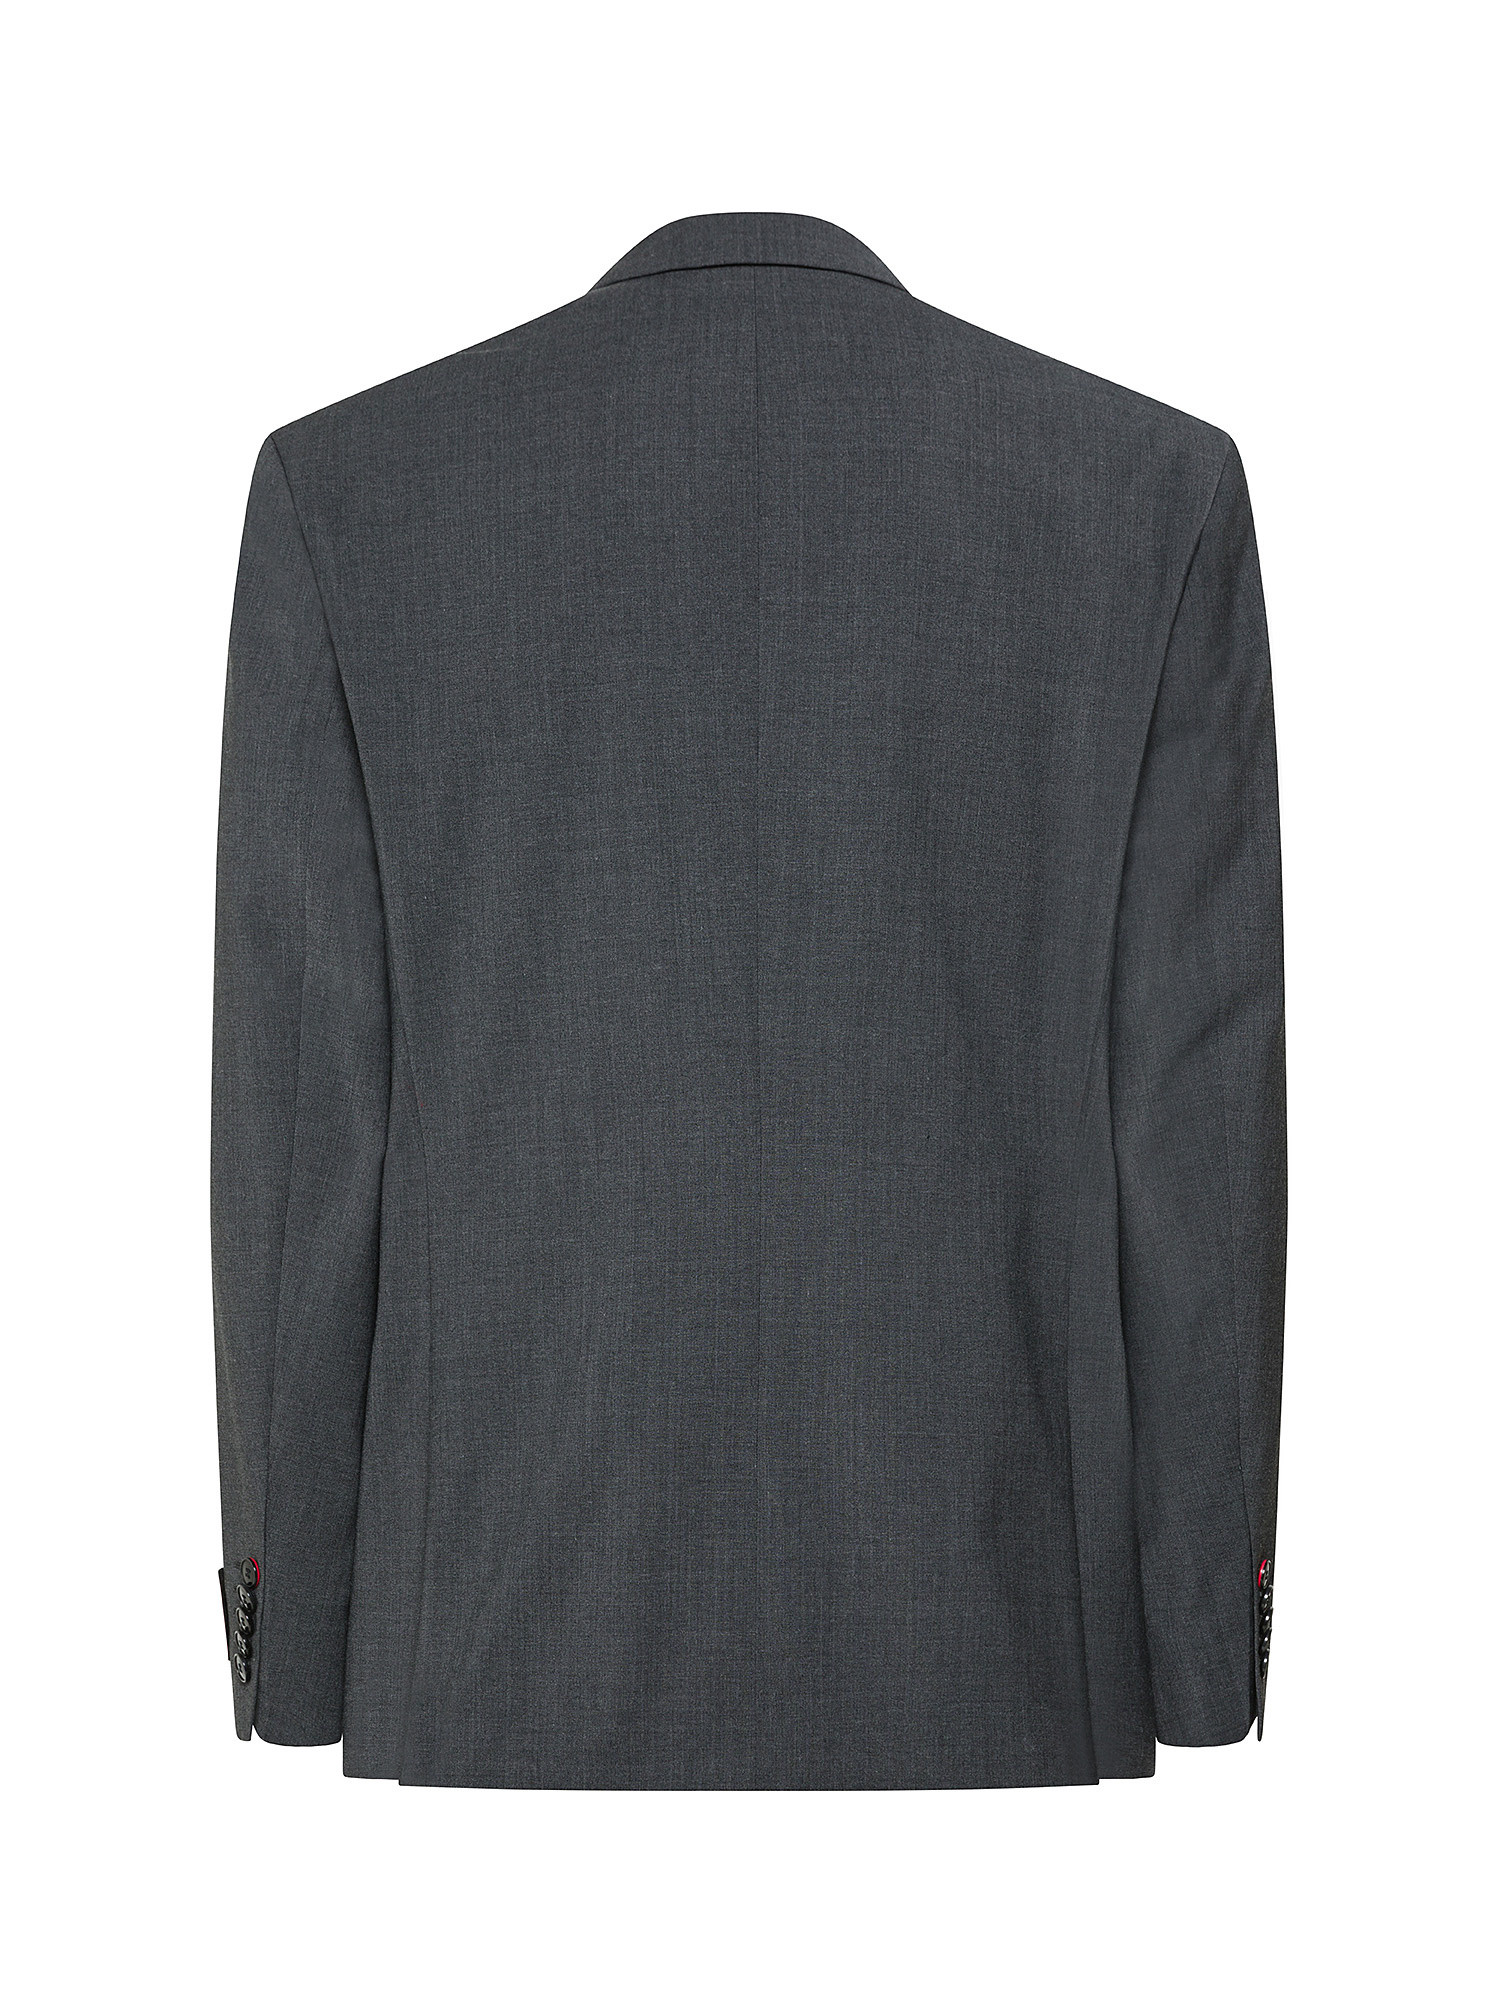 Hugo - Blazer with pockets, Dark Grey, large image number 1